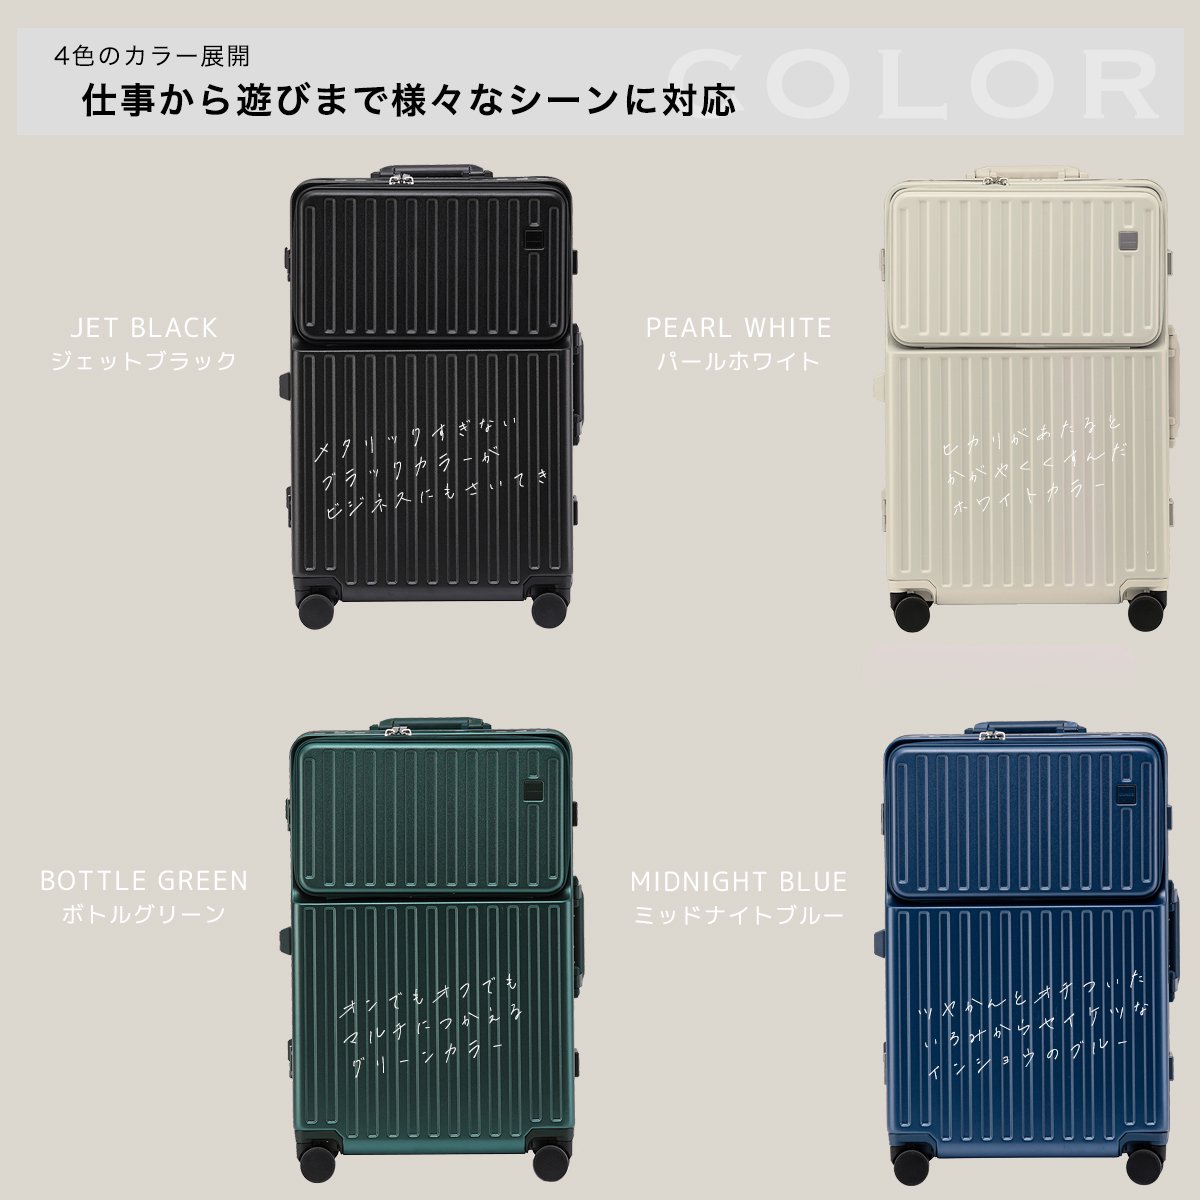 OUNCE 多機能 スーツケース アルミフレーム Mサイズ STYLISH JAPAN 